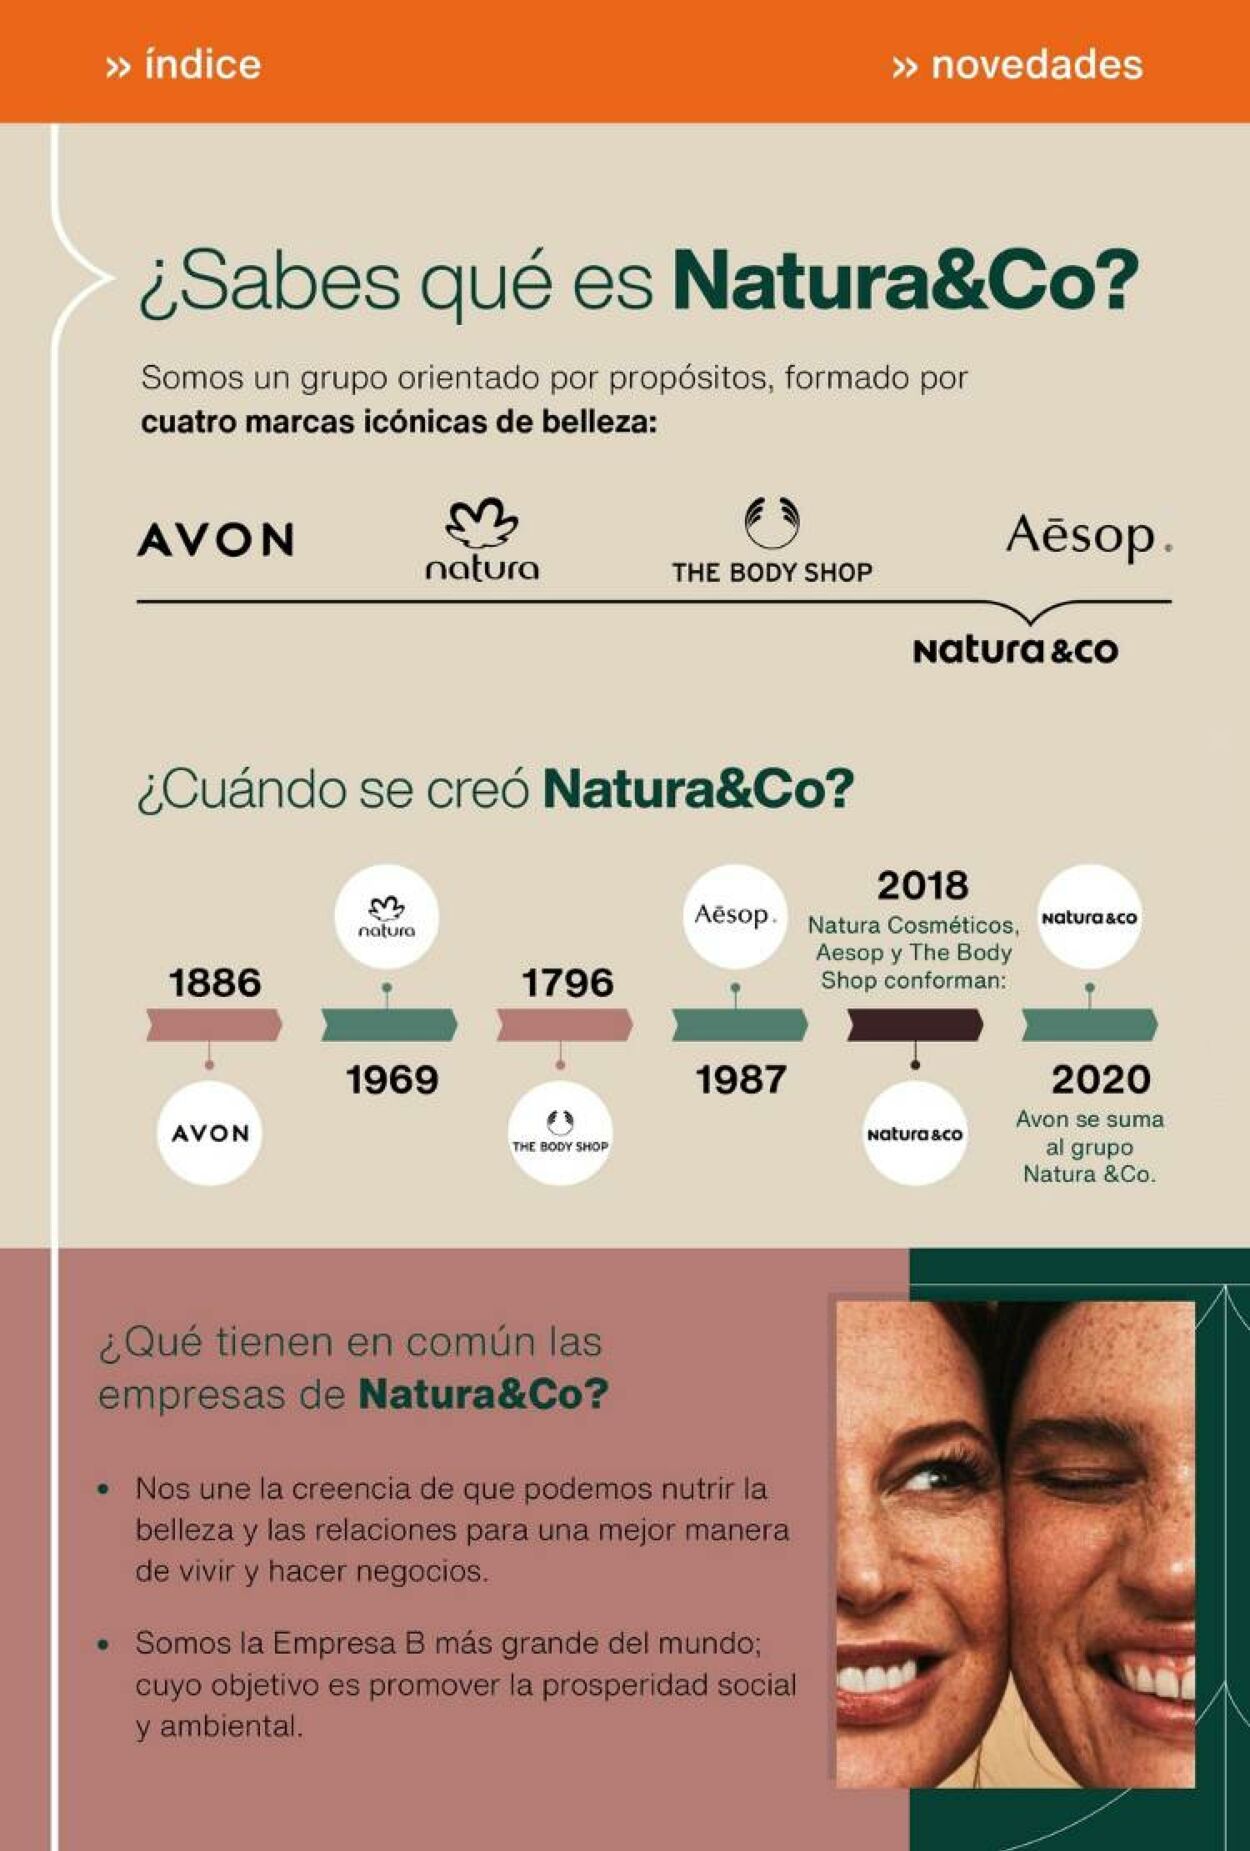 Catálogo Natura 17.06.2023 - 07.07.2023